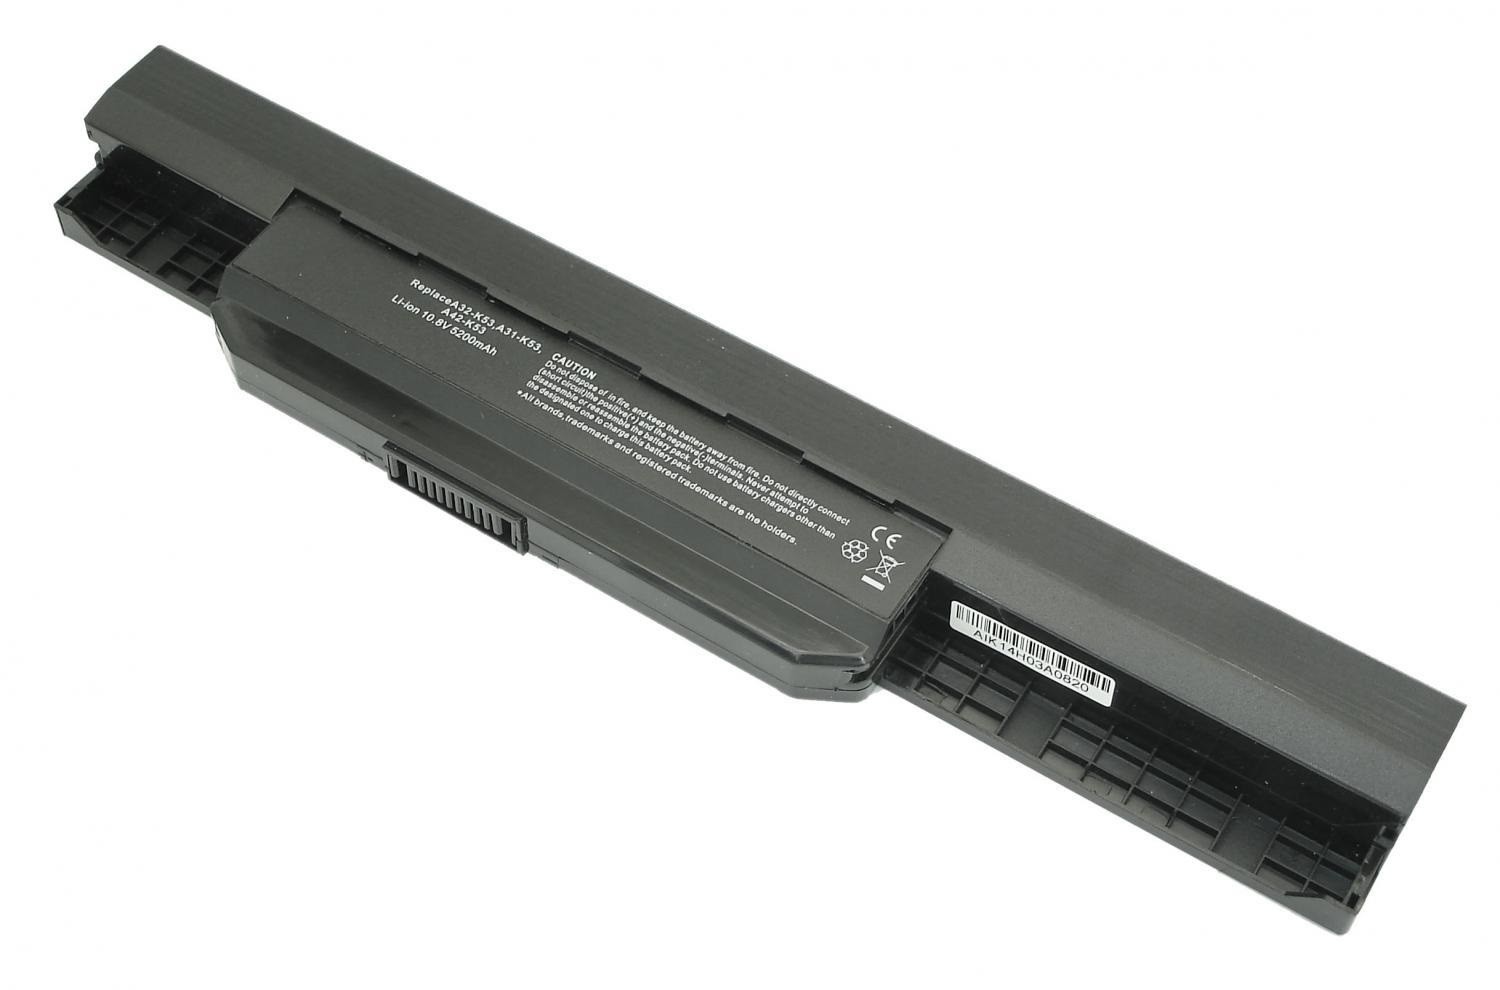 Батарея для ноутбука A32-K53 (009164) (10.8V, 5200mAh, Asus K53 OEM)